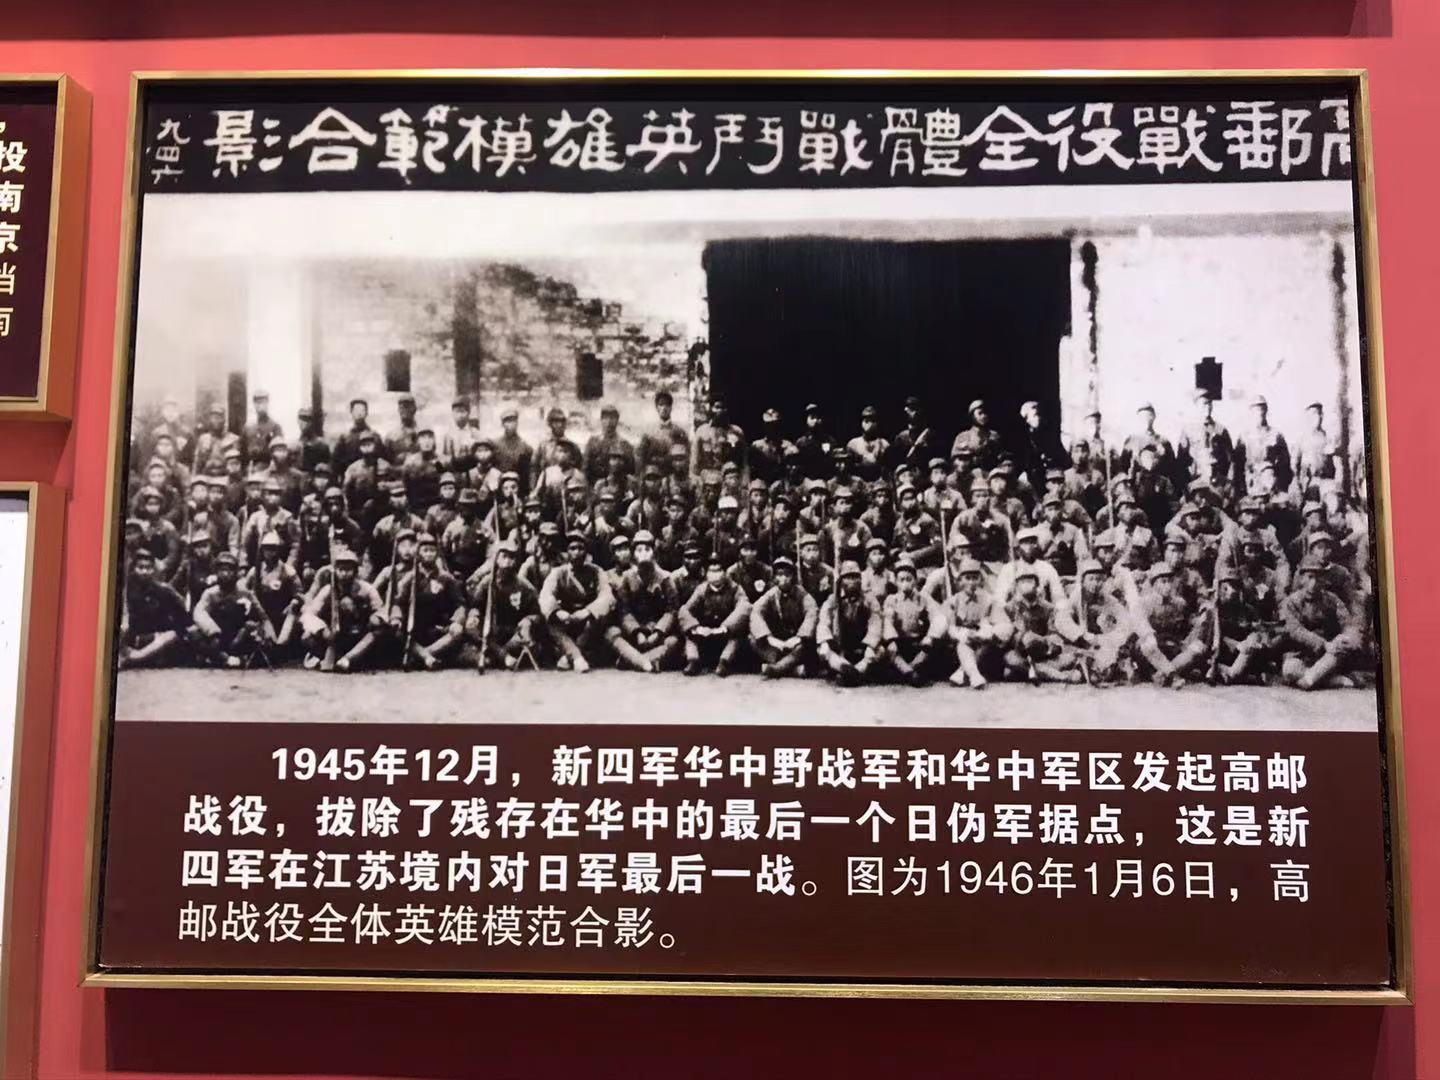 76年前的今天日本投降！看“中国共产党在江苏历史展”感受胜利荣光